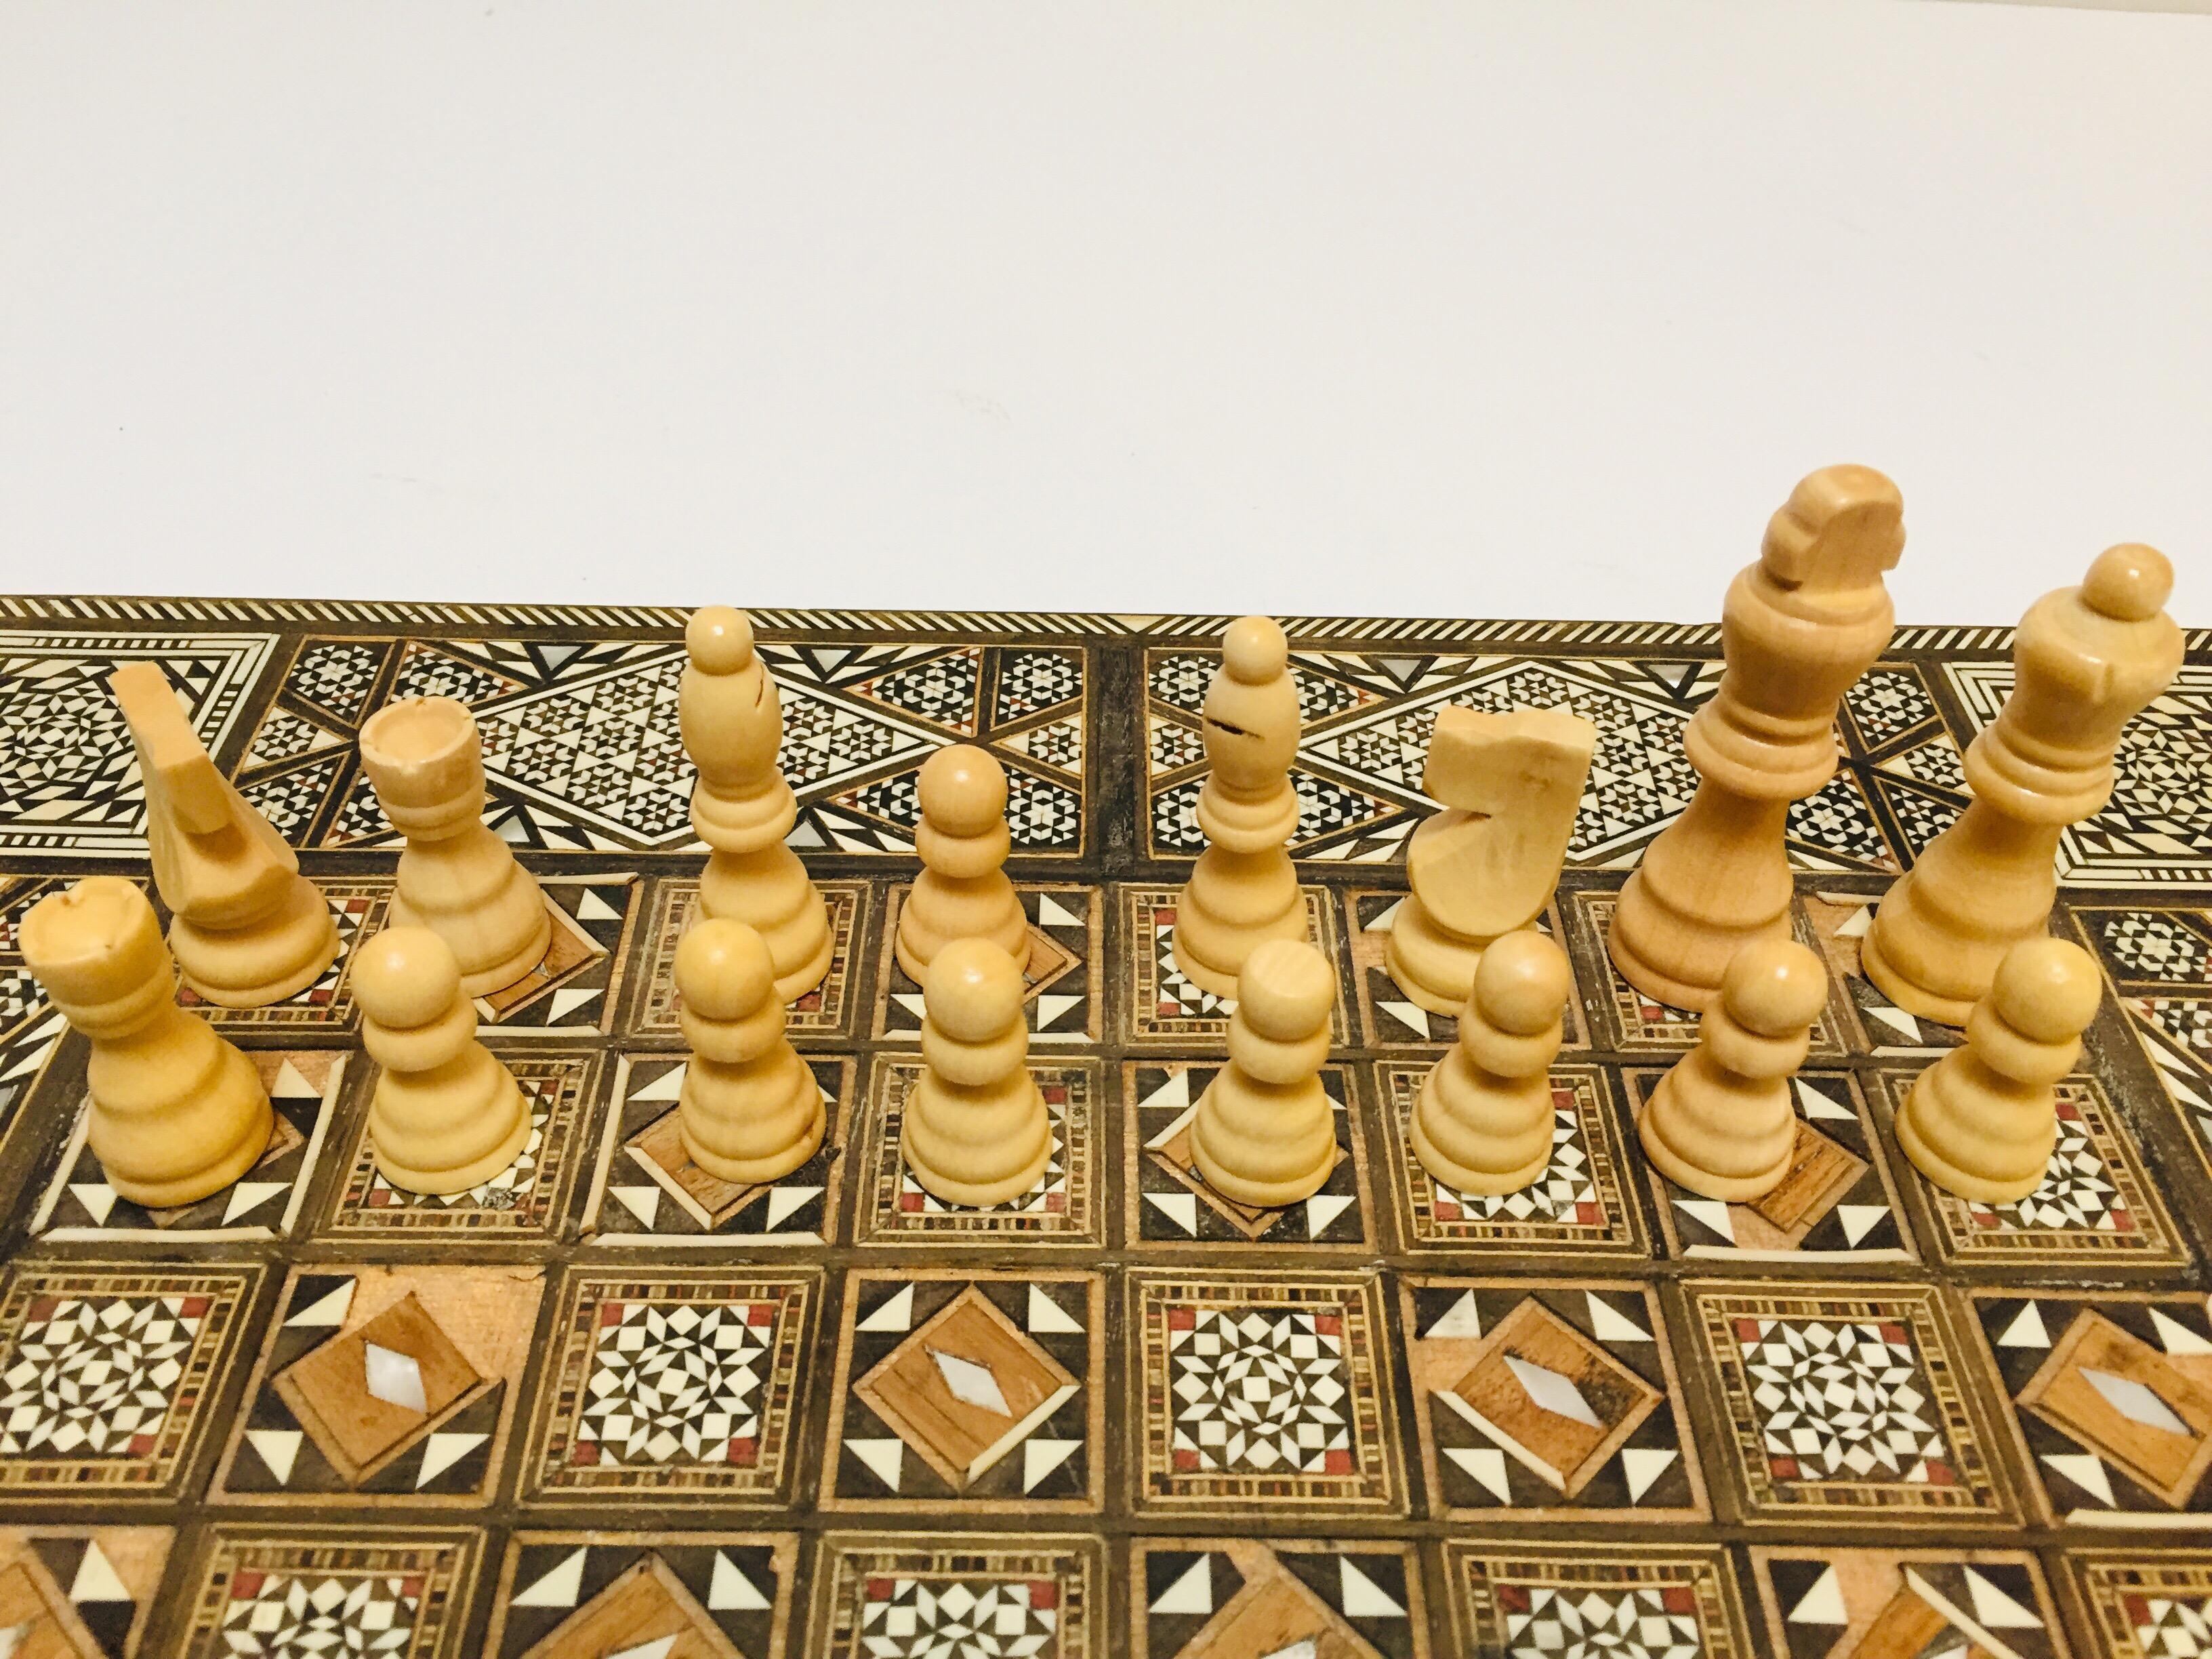 Vieux grand jeu complet de backgammon et d'echecs en mosaique incrustee syrienne 6